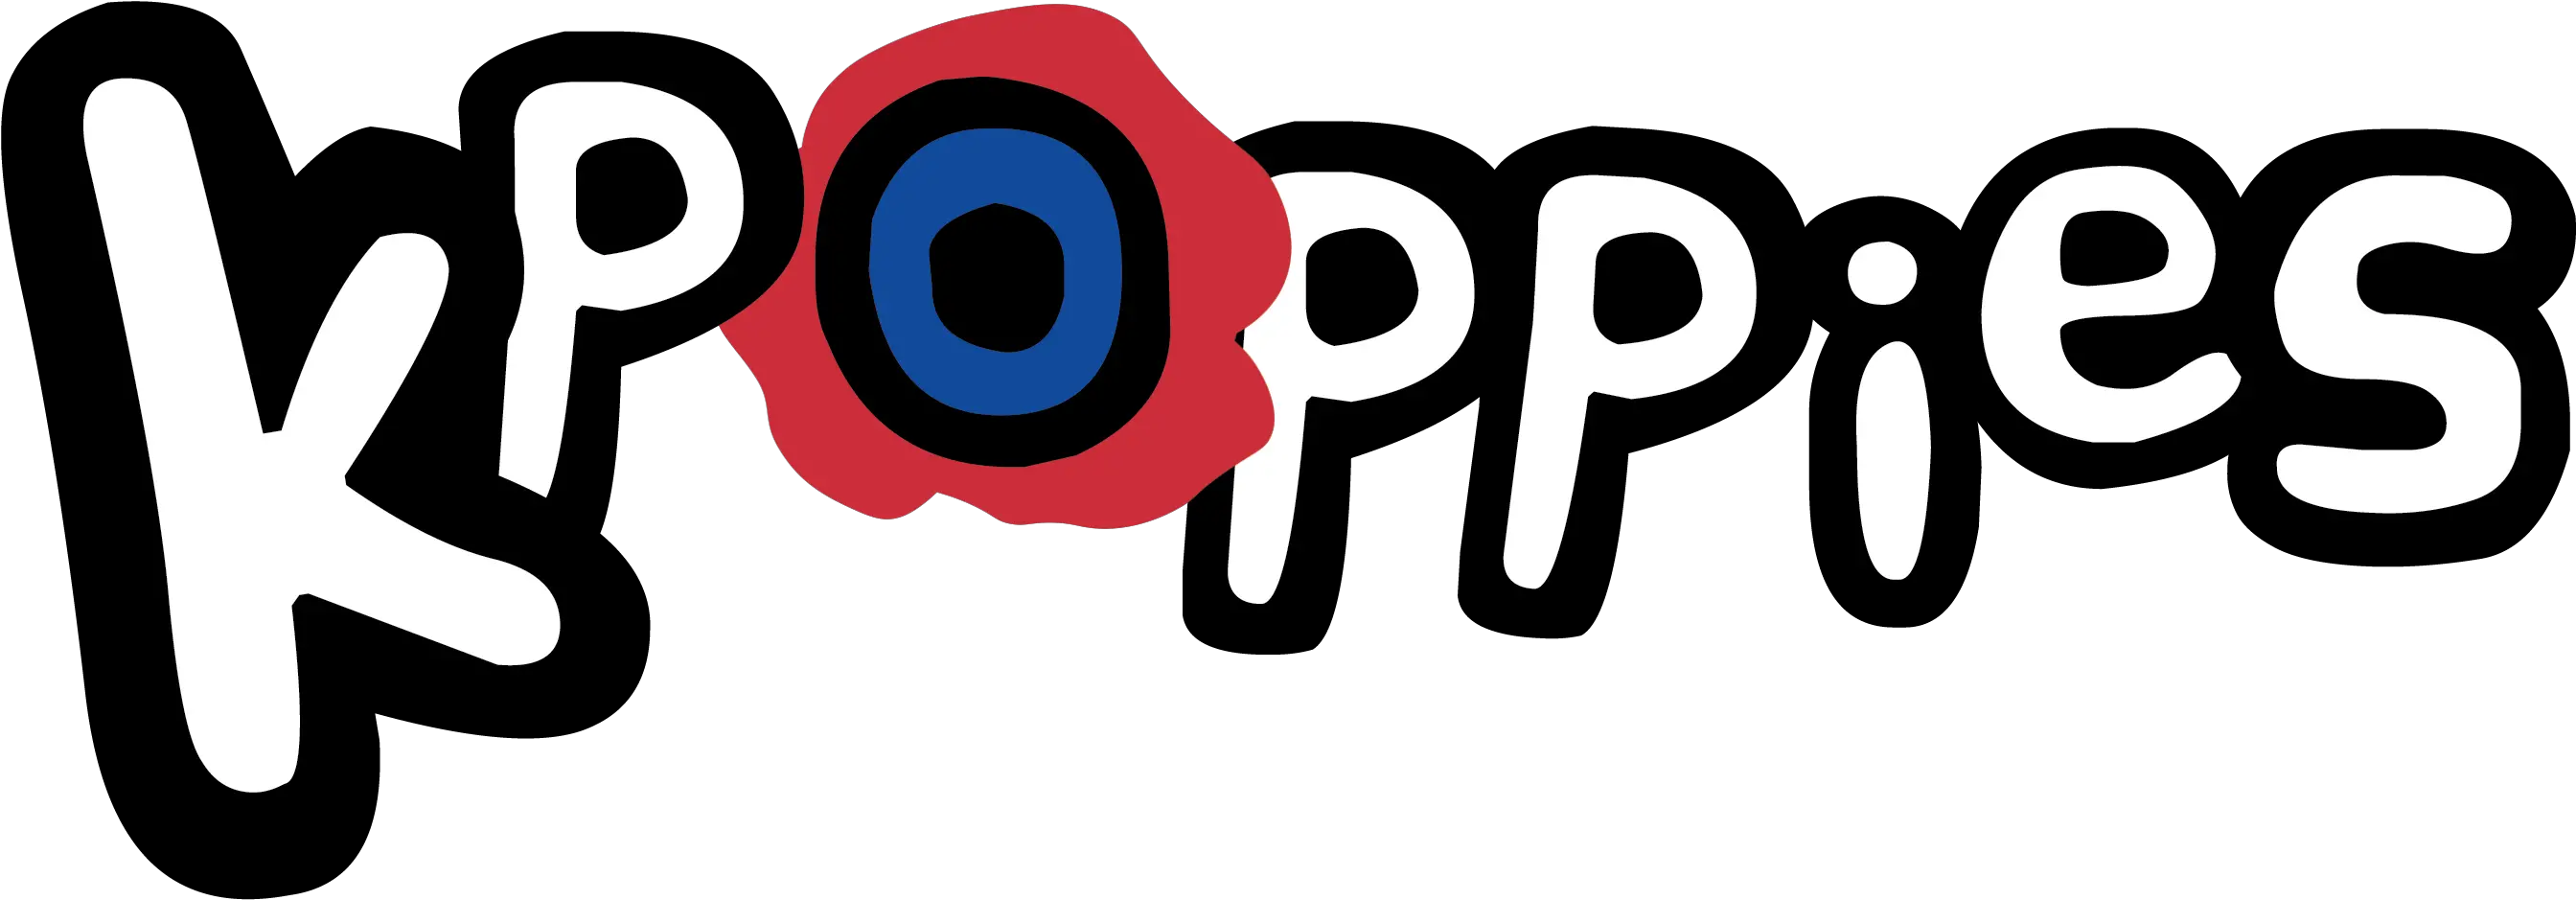 Lay Kpoppies Kpoppies Png Vixx Logo